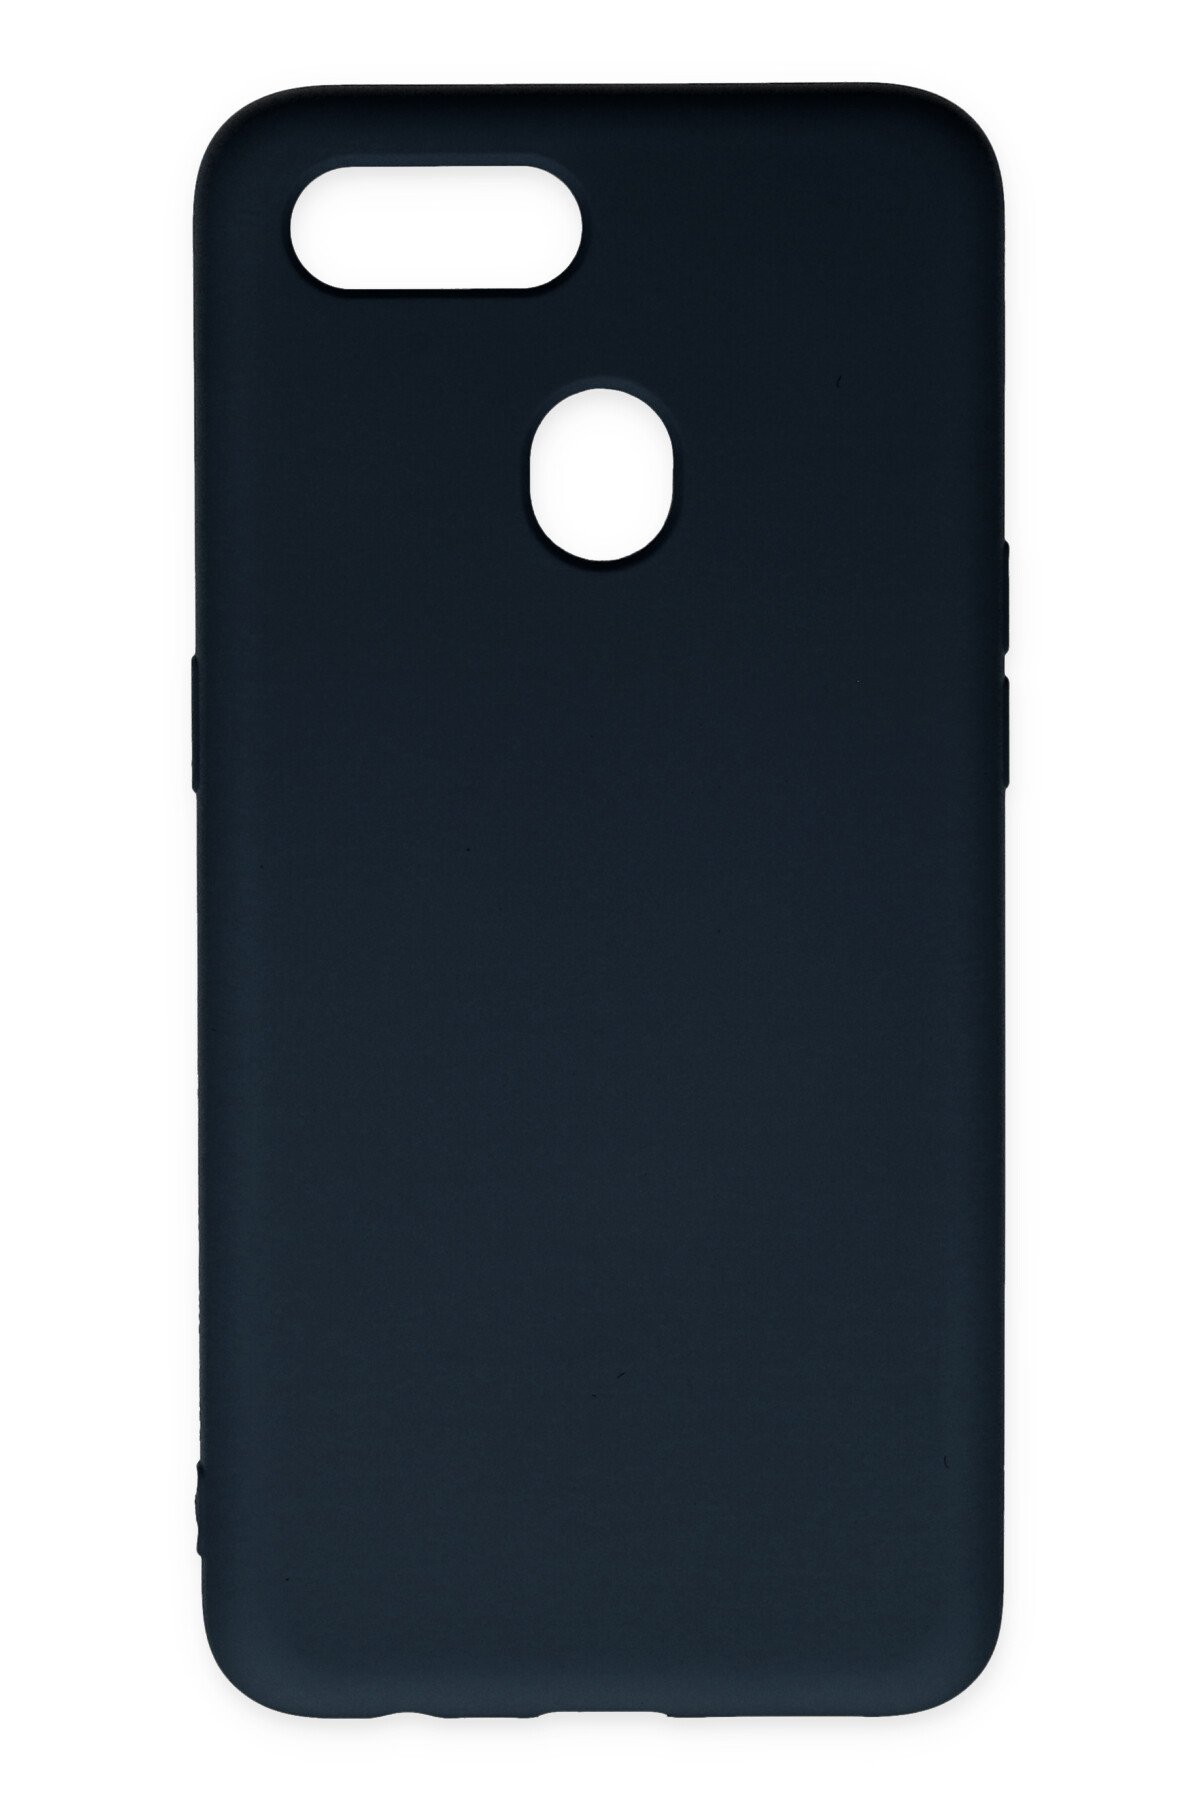 Newface Oppo AX7 Kılıf Nano içi Kadife  Silikon - Mavi